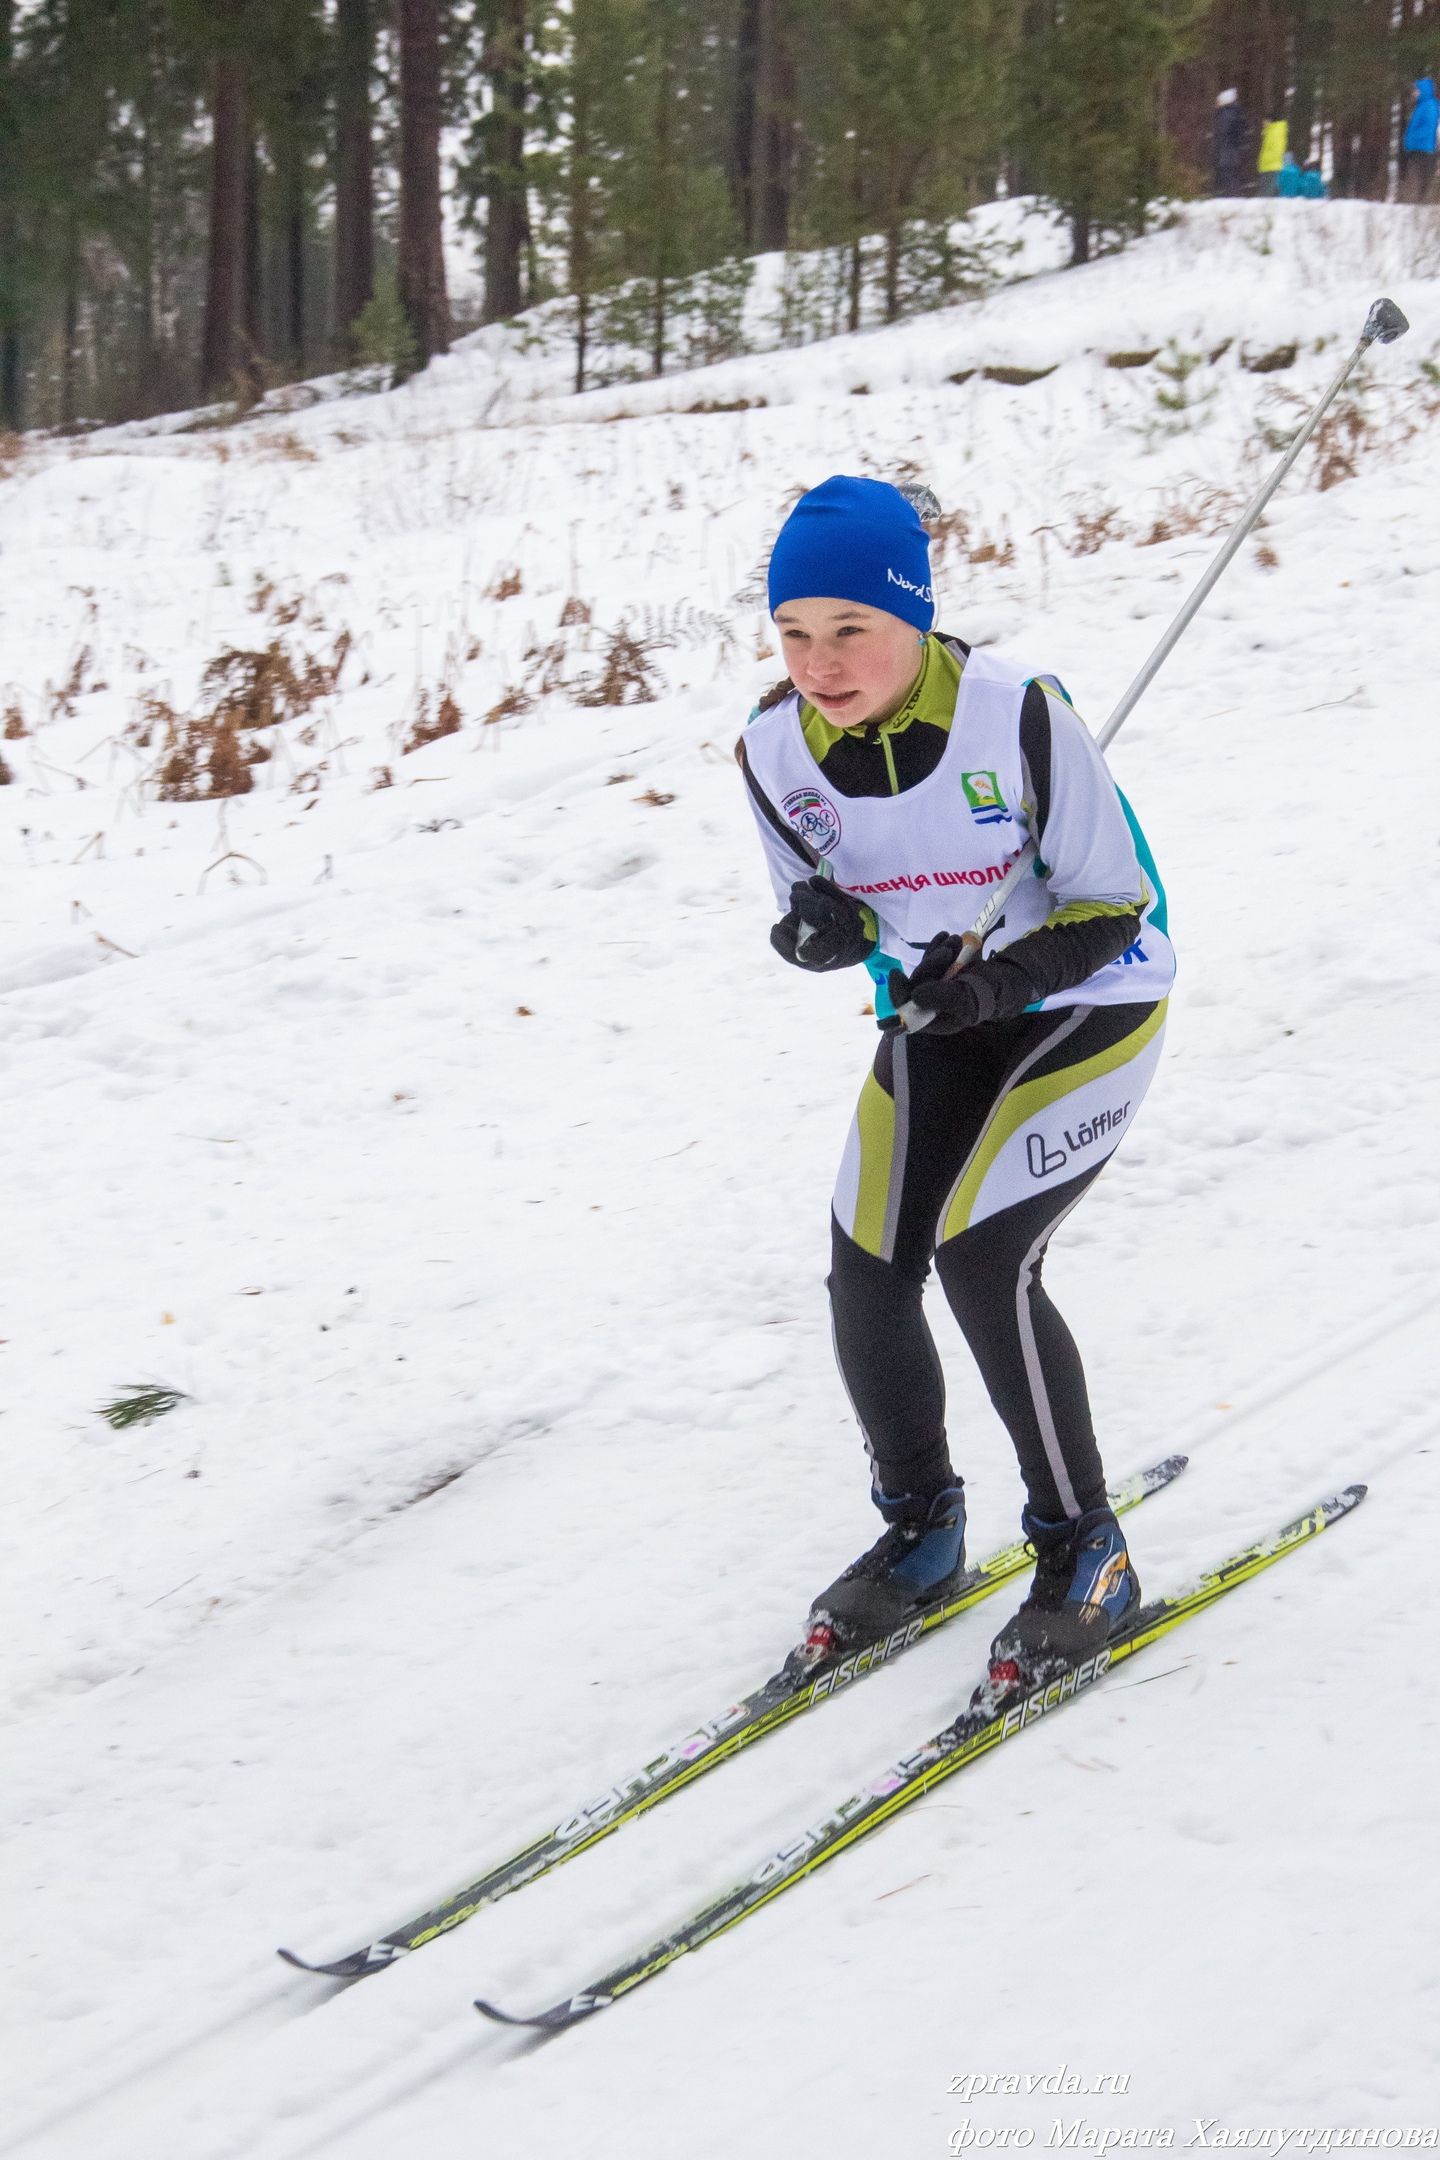 В СК «Маяк» в Зеленодольске проходит Первенство Республики Татарстан по лыжным гонкам